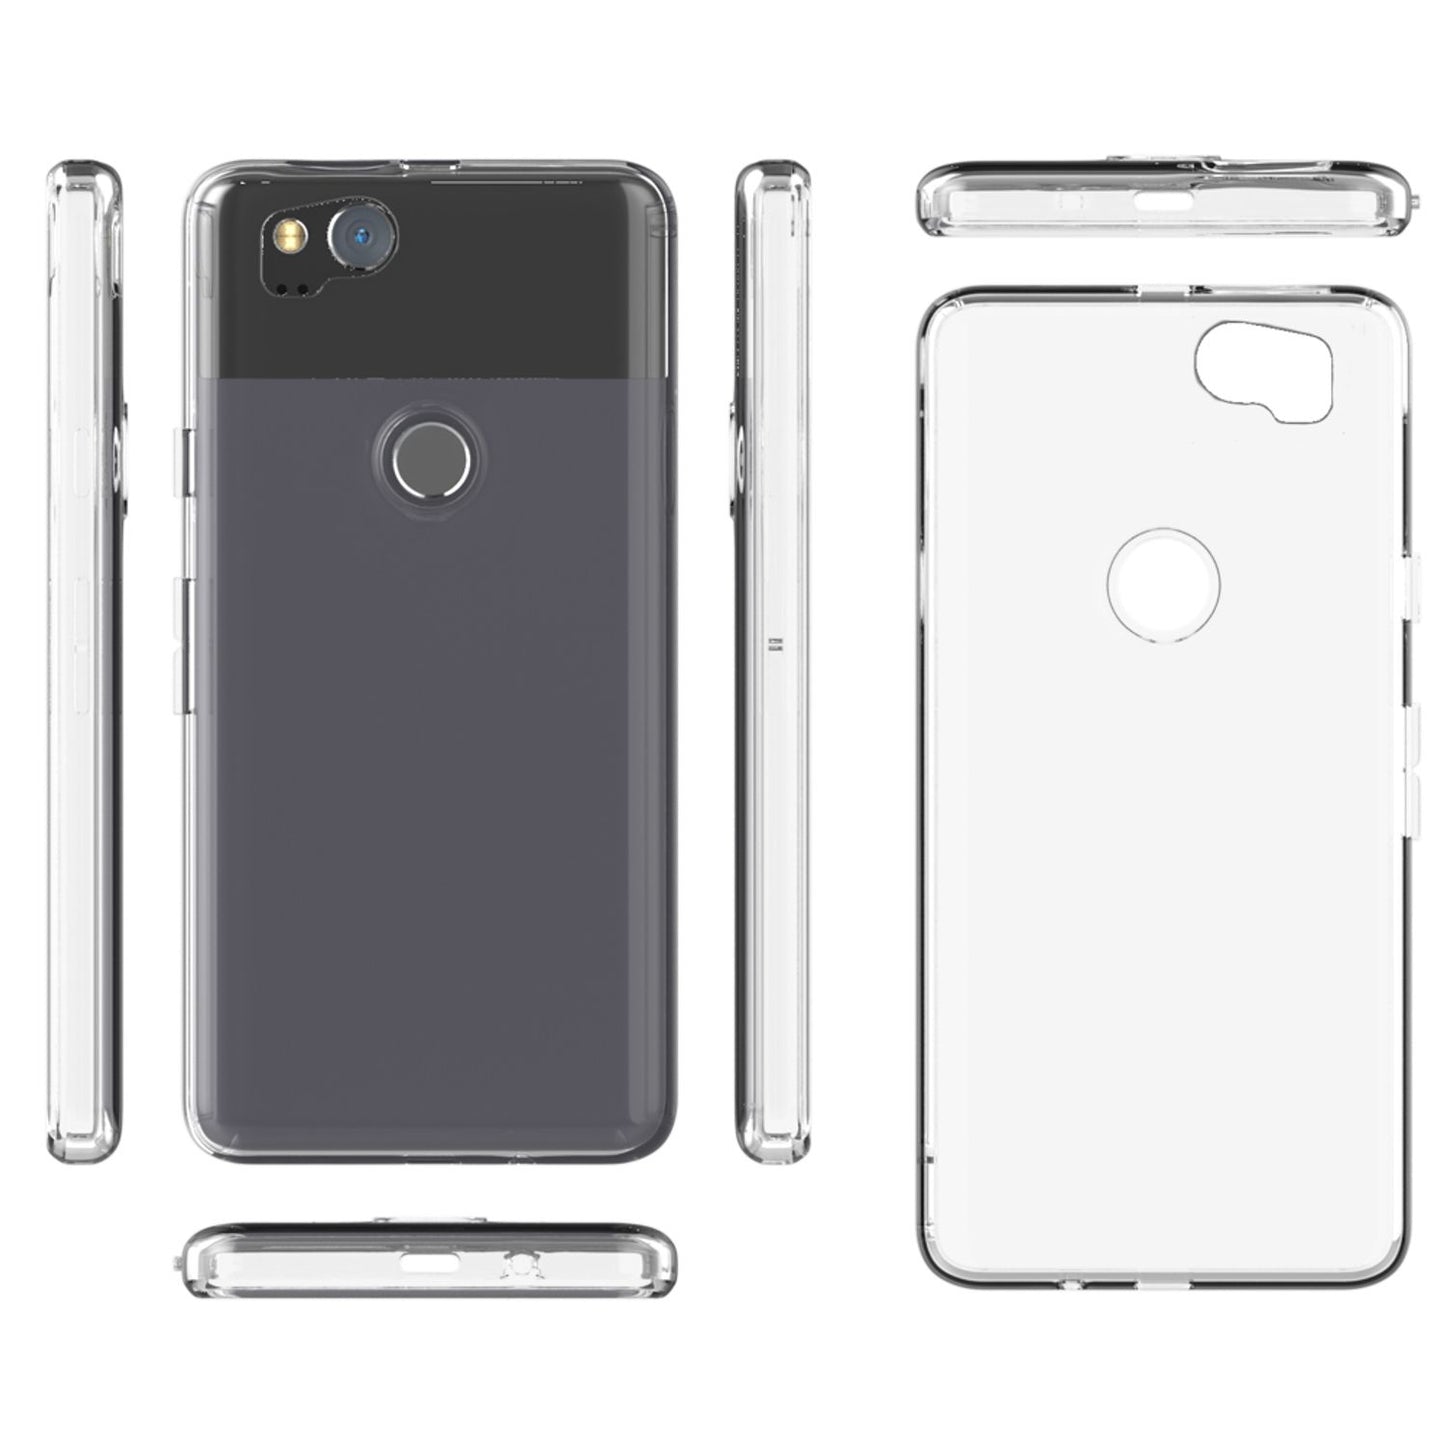 NALIA Handy Hülle für Google Pixel 2, Slim Schutz Silikon Case Cover Tasche Etui